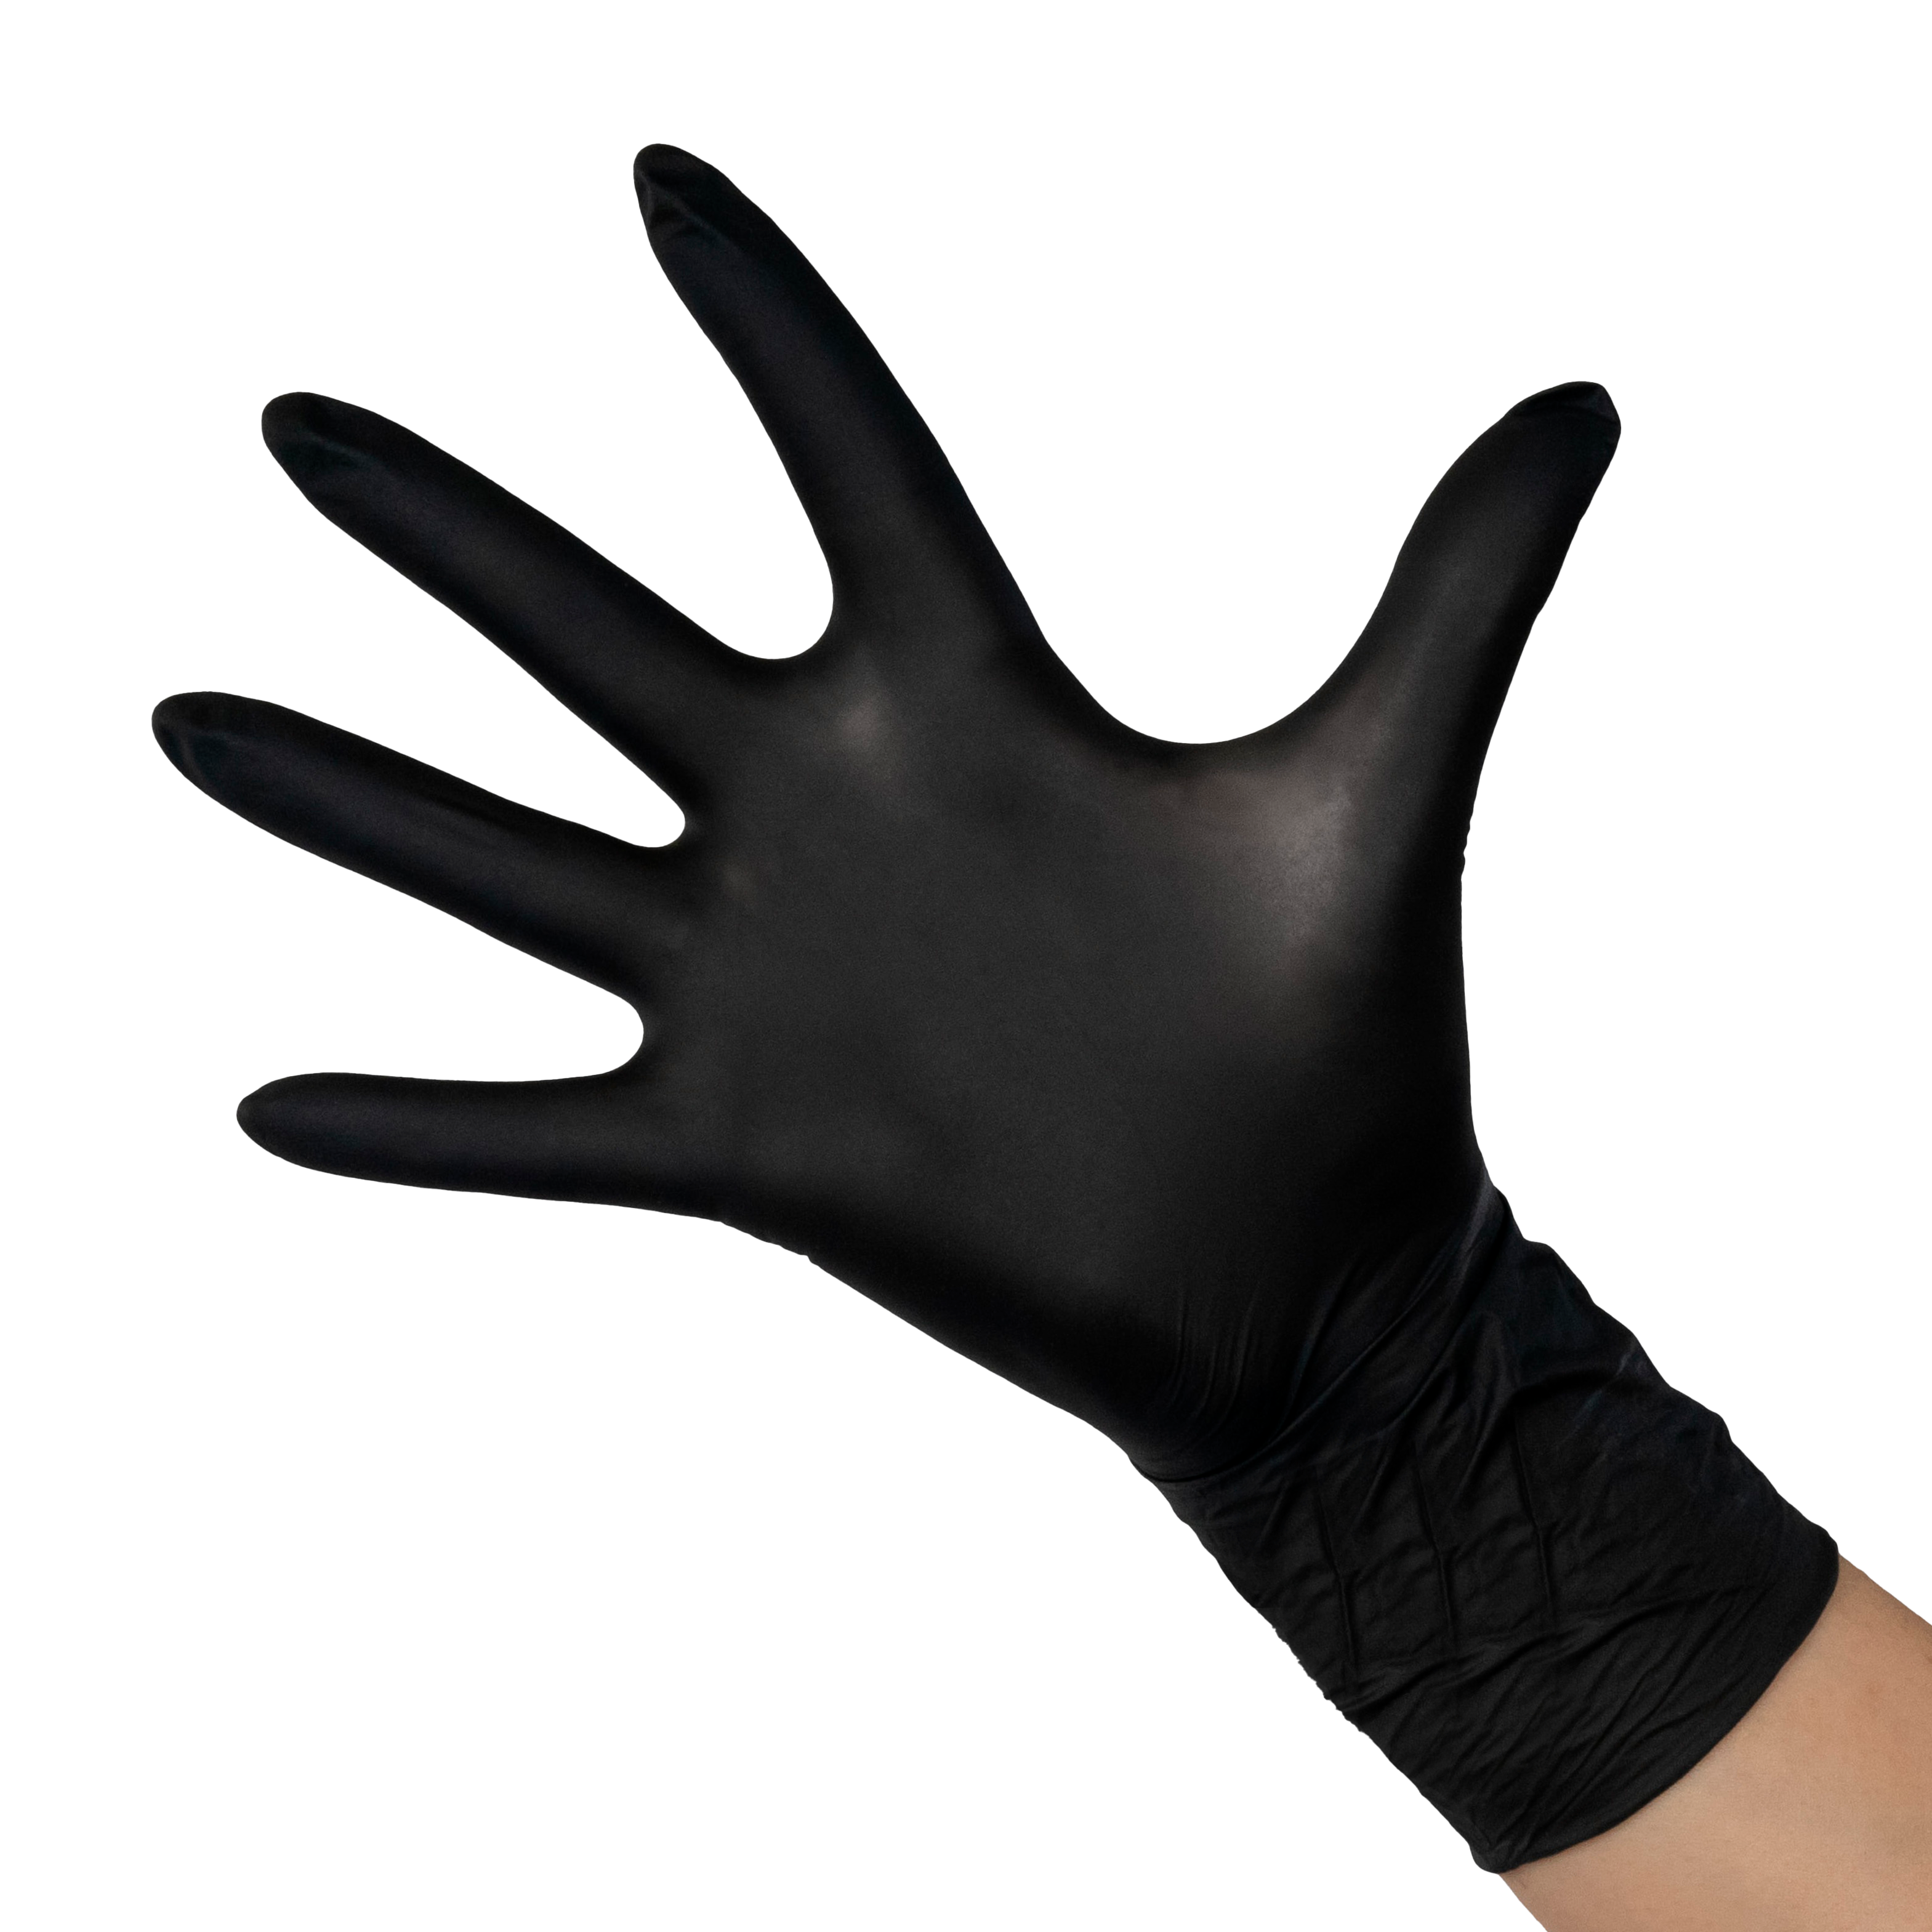 SAFE & CARE Перчатки нитрил черные S / Safe&Care ZN 318 100 шт перчатки смотровые нитриловые benovy 193395395479 черные одноразовые 50 пар l